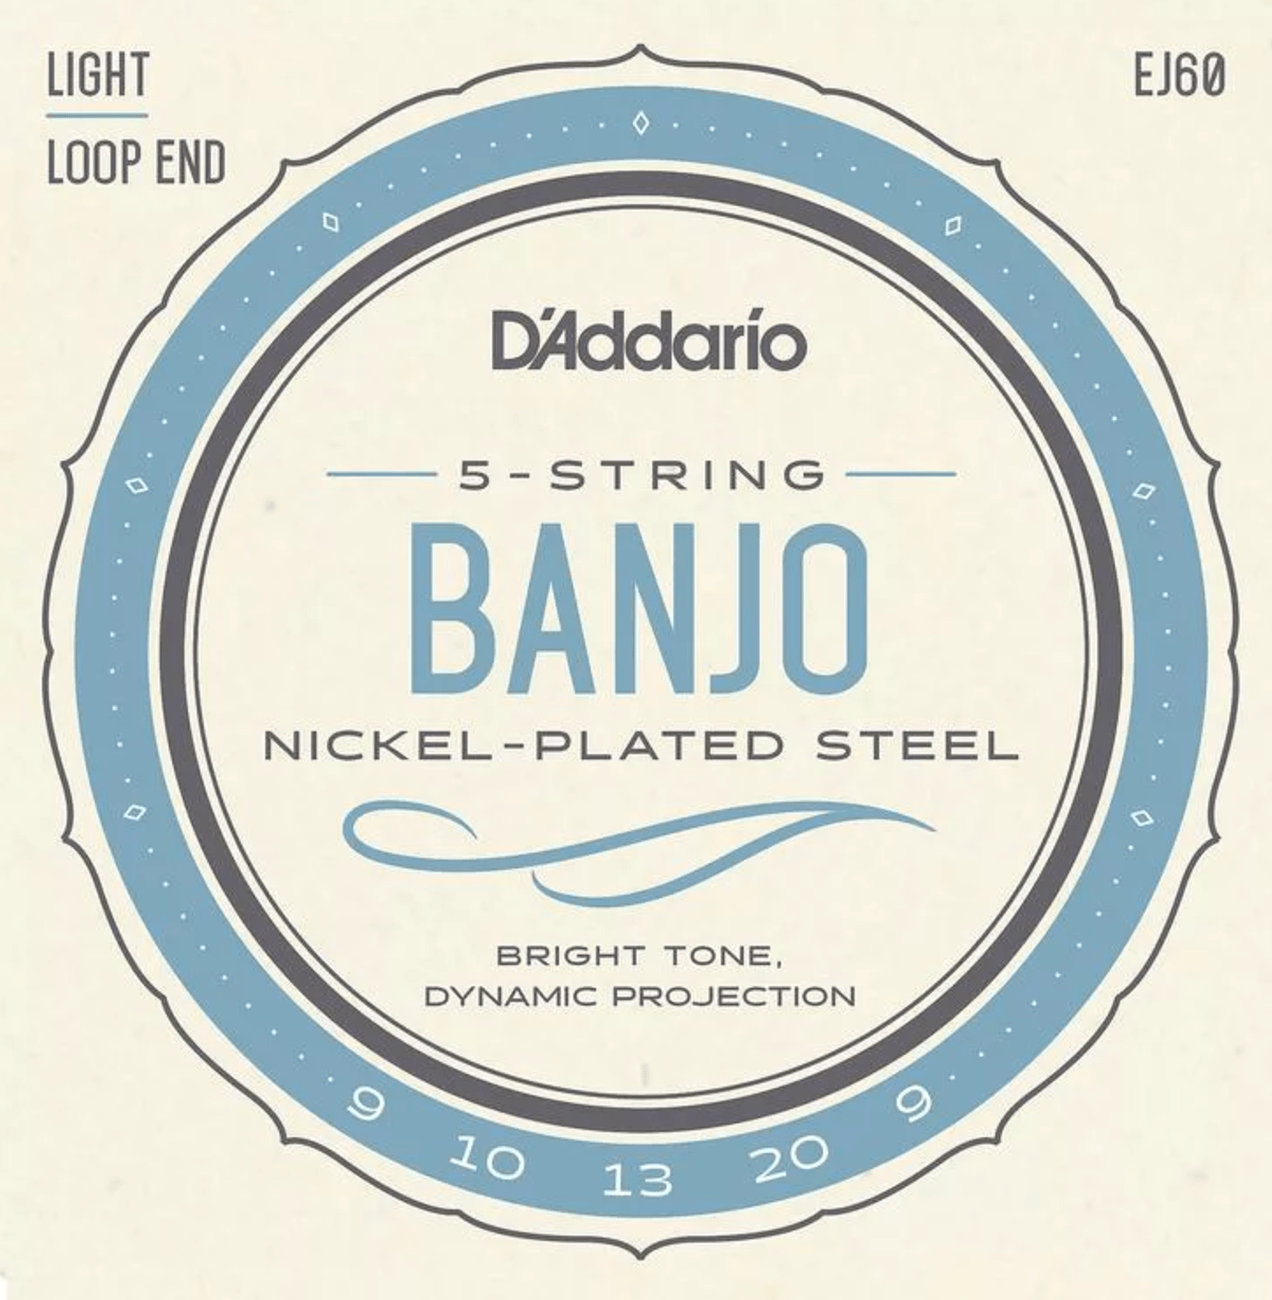 D'Addario EJ60 Nickel Wound Banjo Strings - .009-.020 Light 5-String Banjo D'Addario Banjo Strings